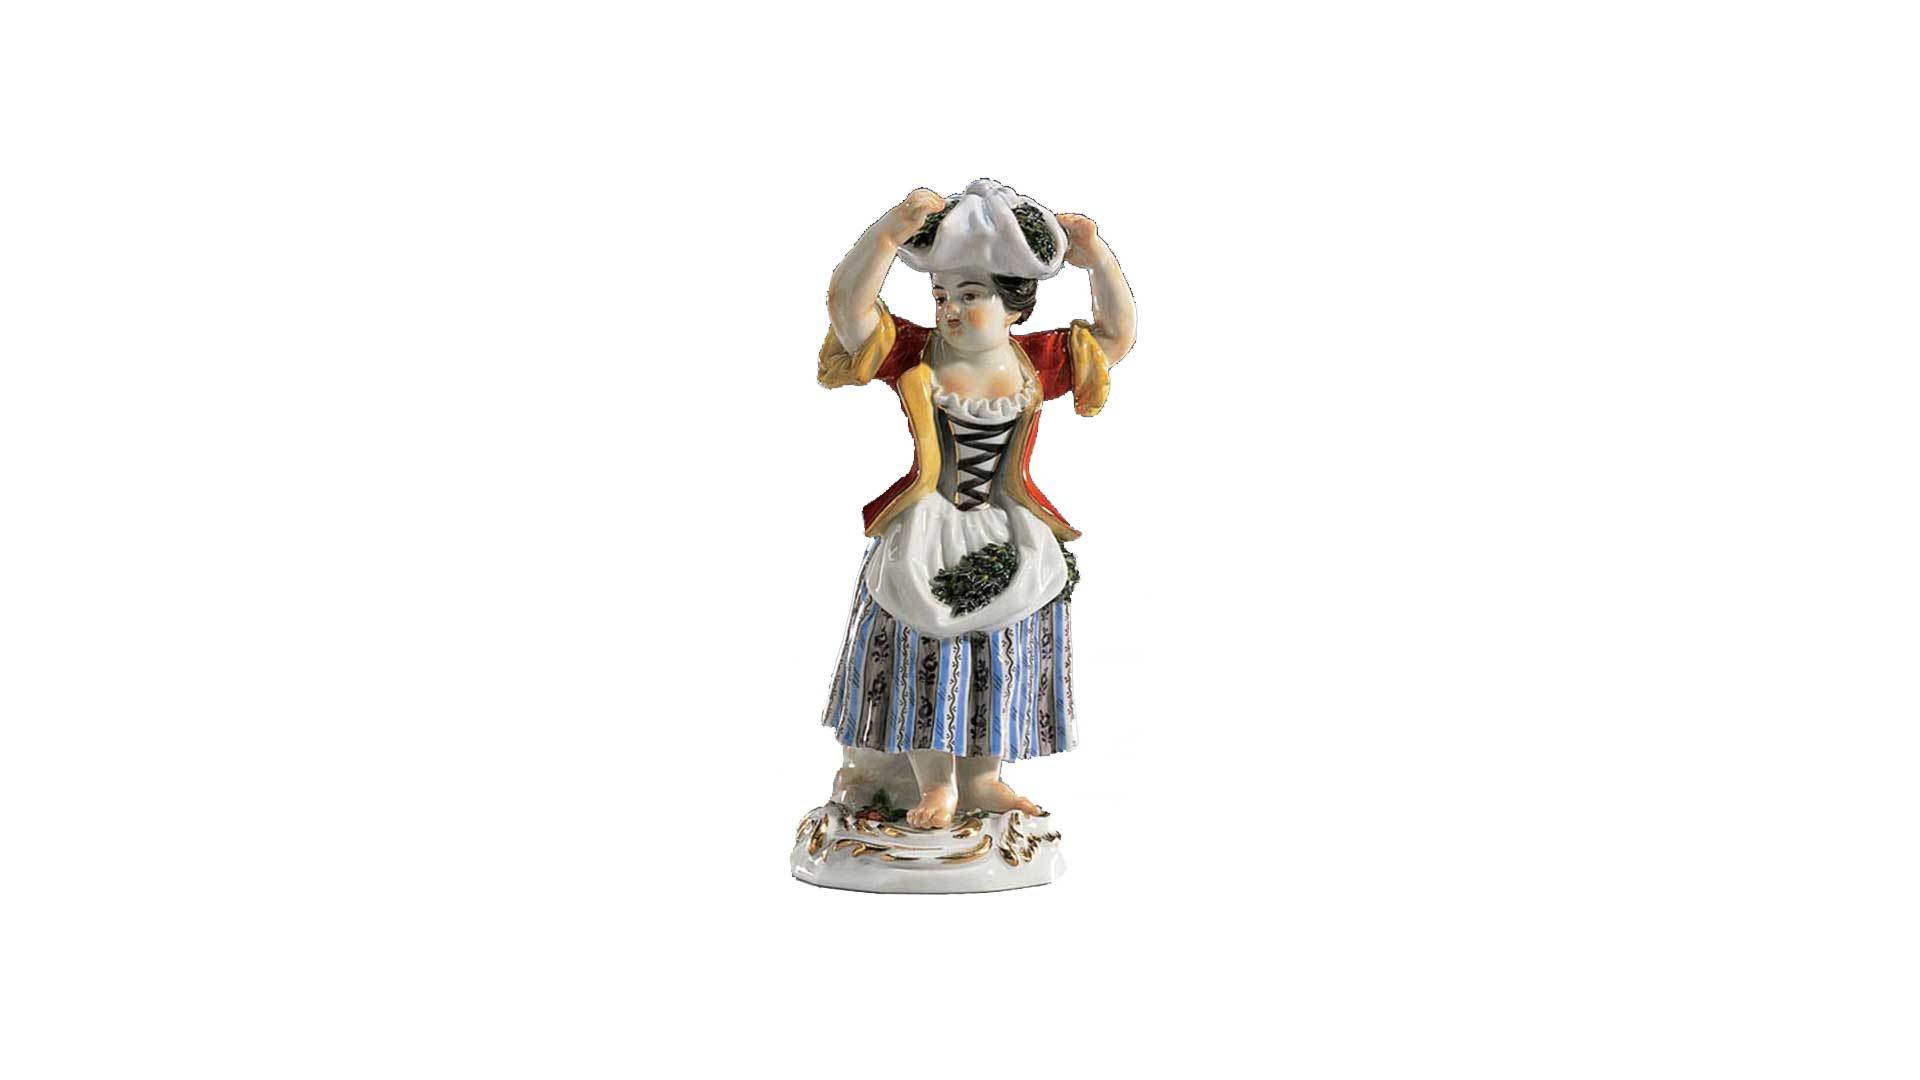 Фигурка Meissen 15,5 см Девочка с вязанкой на голове, И-ИКэндлер,1740г, пара к 60304